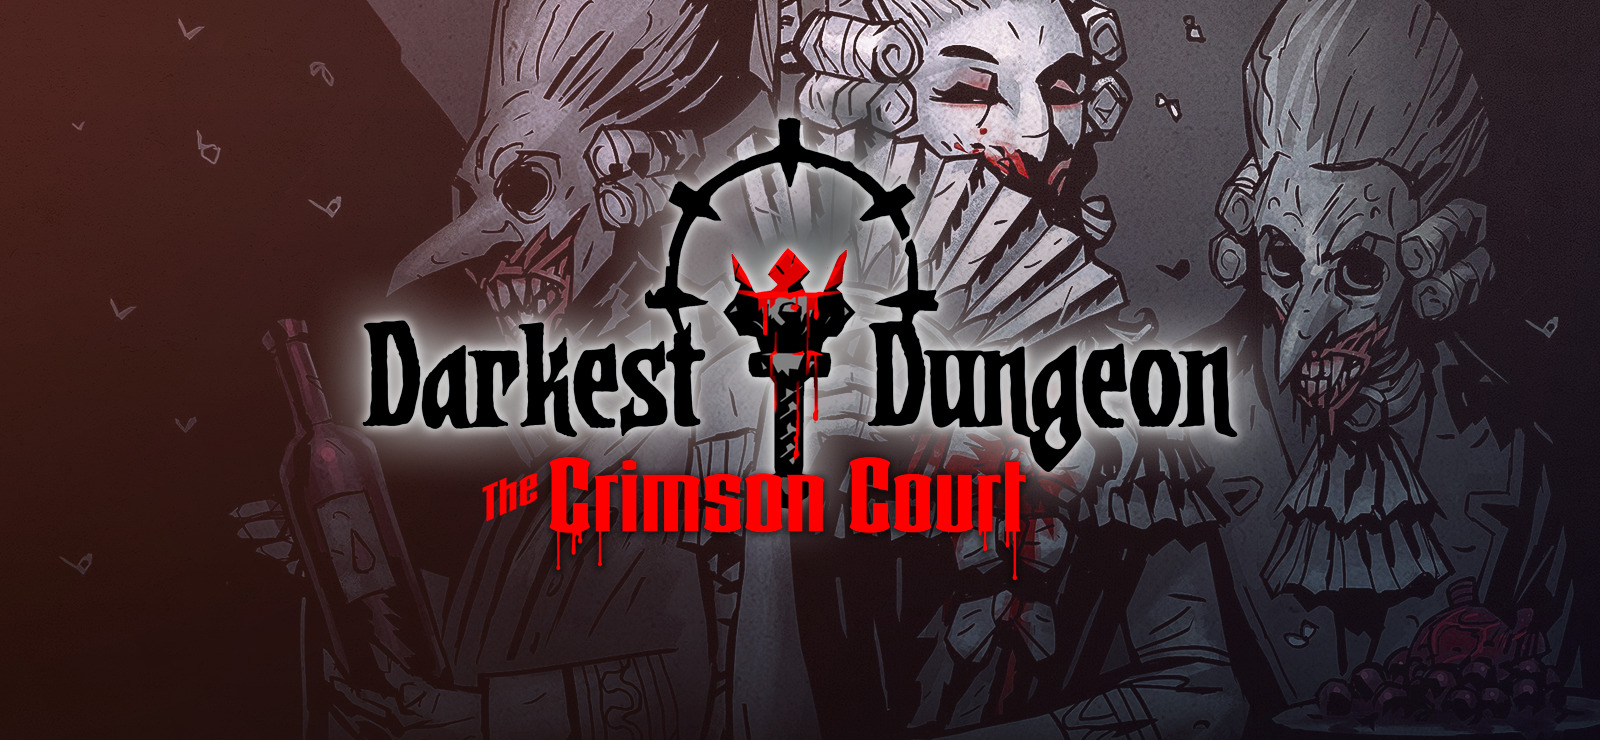 darkest dungeon the crimson court review